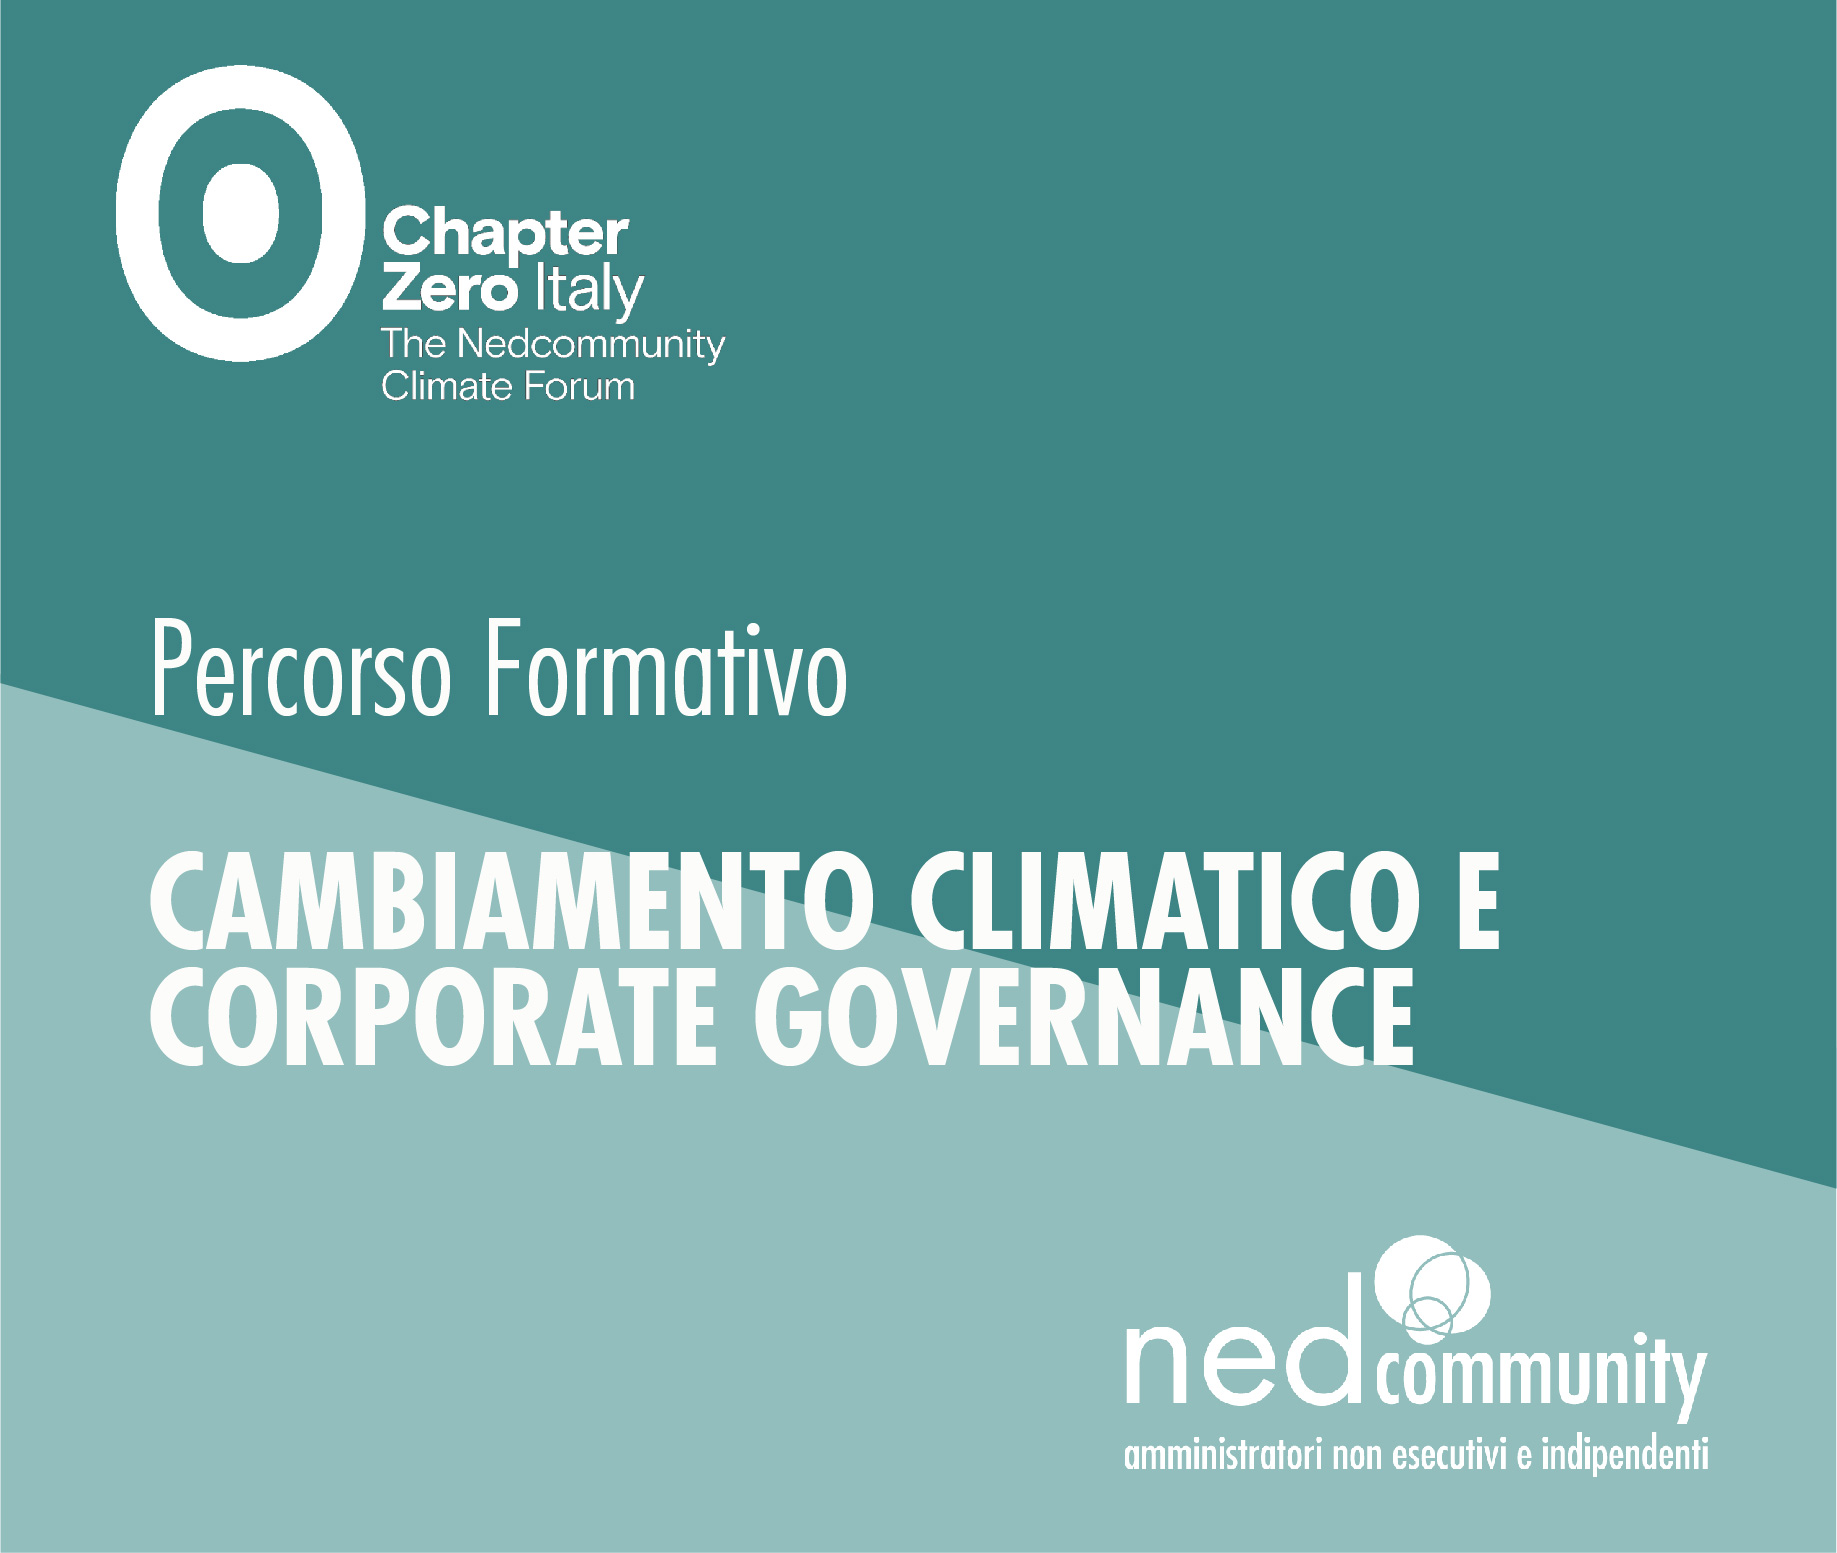 Cambiamento Climatico e Corporate Governance 2022